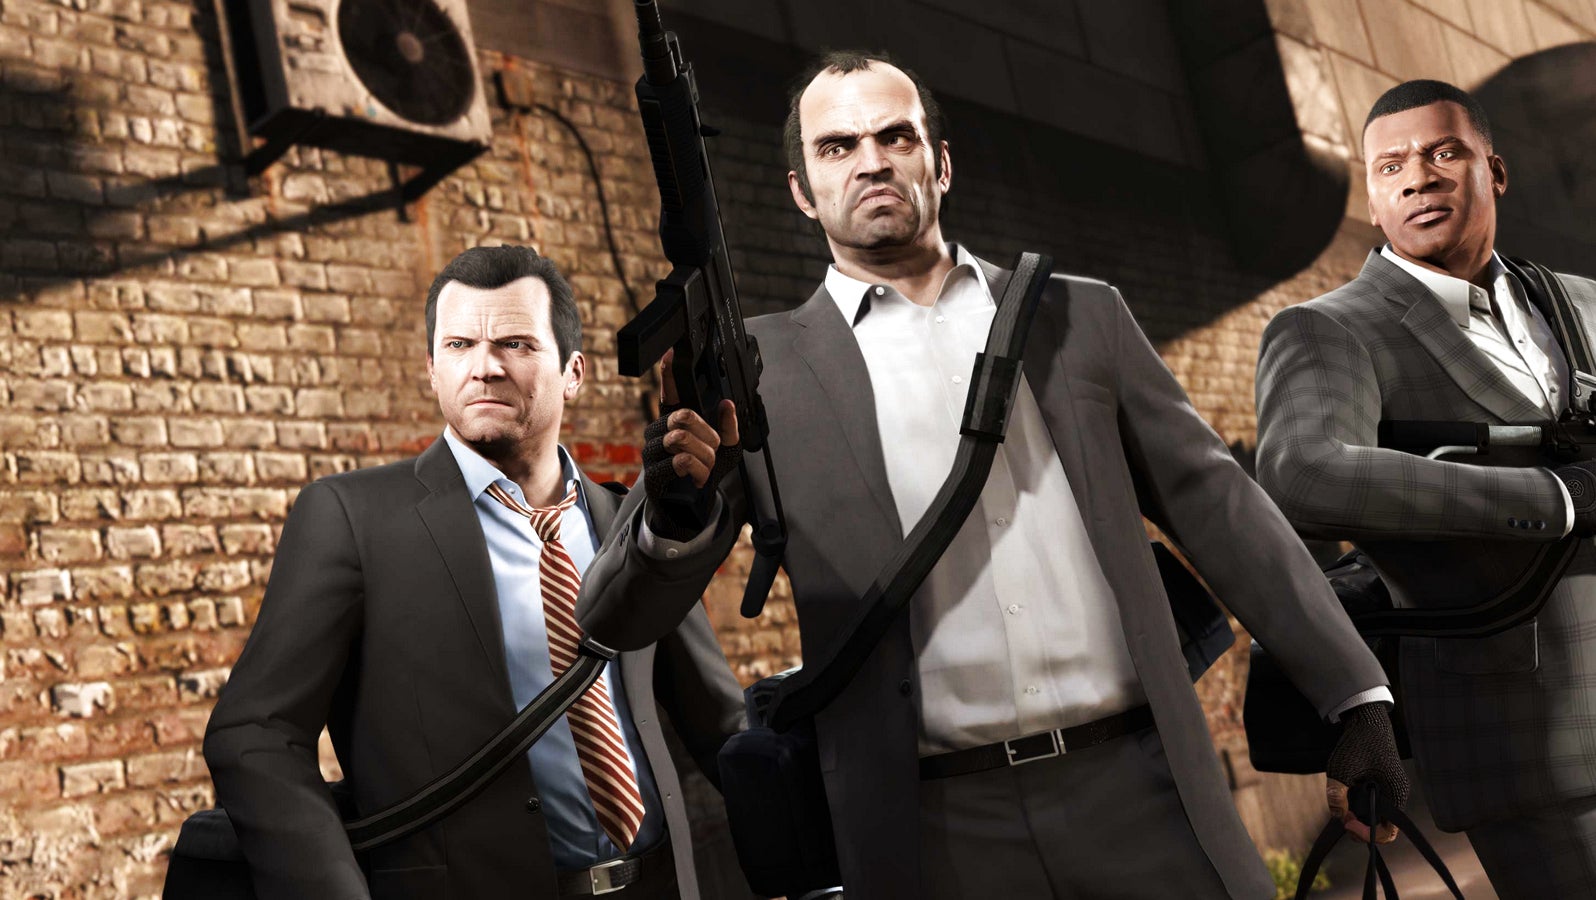 Bilder zu GTA 5 bietet 3 Grafik-Modi auf PS5 und Xbox Series X/S